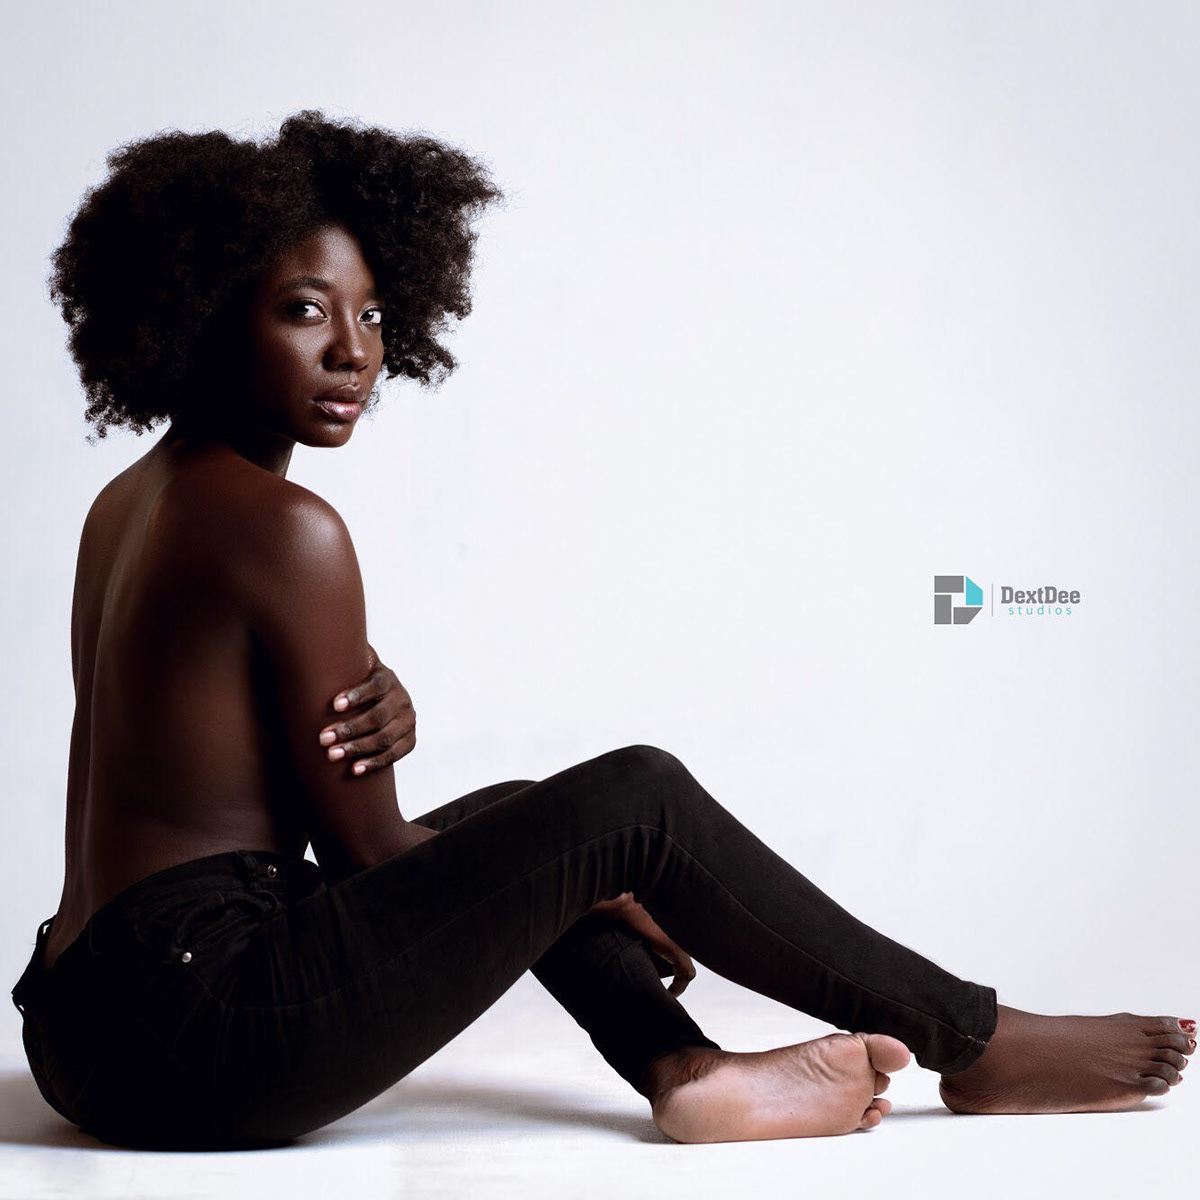 4c hair afro beauty Black Beauty black model Black Models brown skin girl Ghana melanin models natural hair